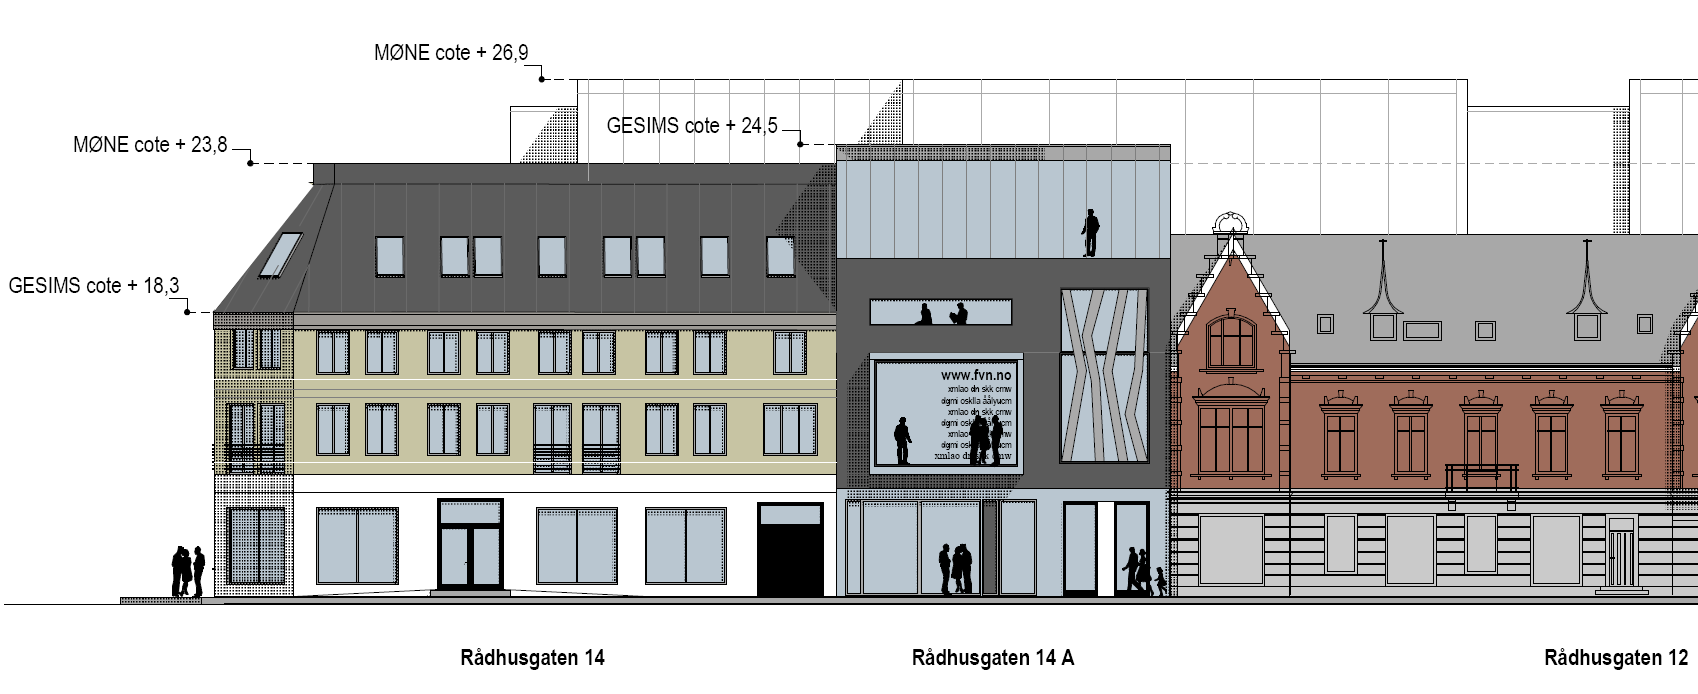 Byggehøyder på Rådhusgata 14 Rådhusgata 14 er ikke regulert til bevaring i Murbyplanen, og vil med hjemmel i denne kunne erstattes med nybygg med 10 m gesimshøyde (ca c+18) og 16 m mønehøyde (ca